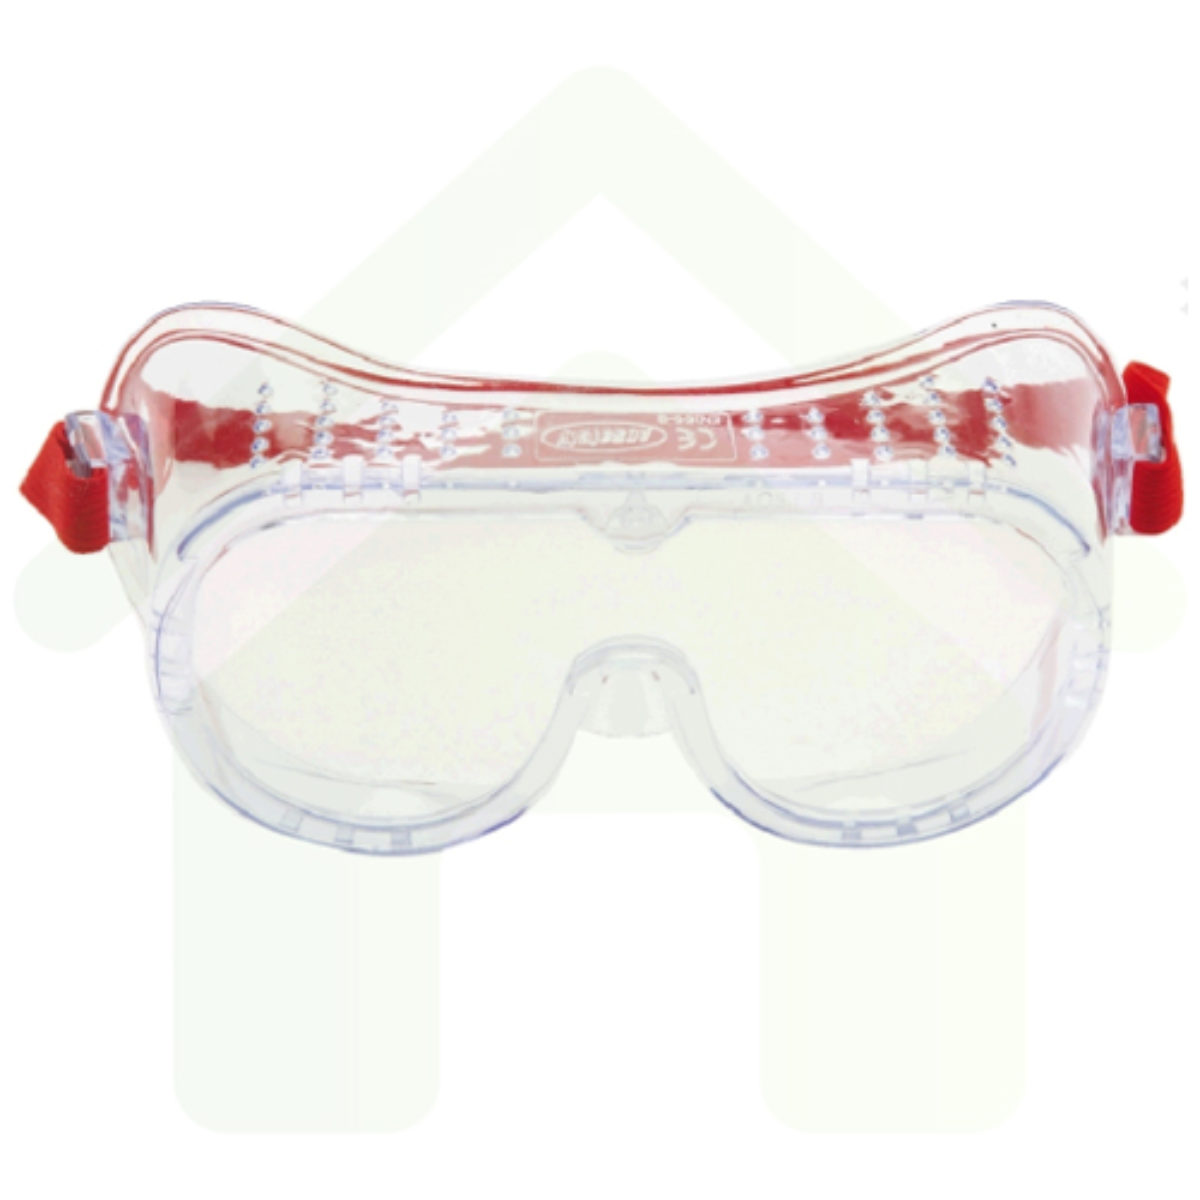 druk regenval Moreel 3M Veiligheidsbril - Ruimzichtbril Polycarbonaat met blanke lens